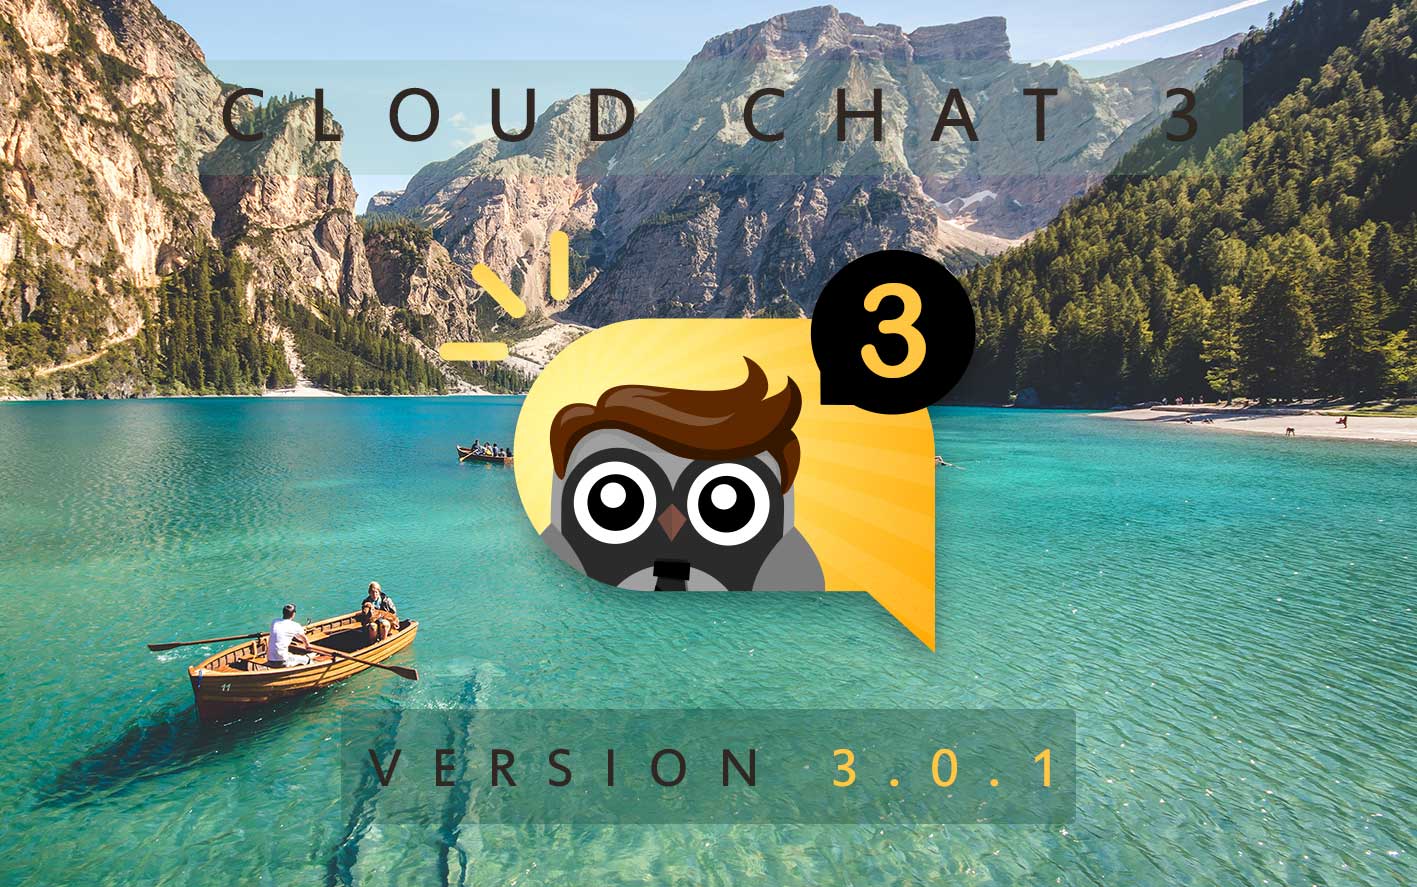 Cloud Chat 3 - Version 3.0.1